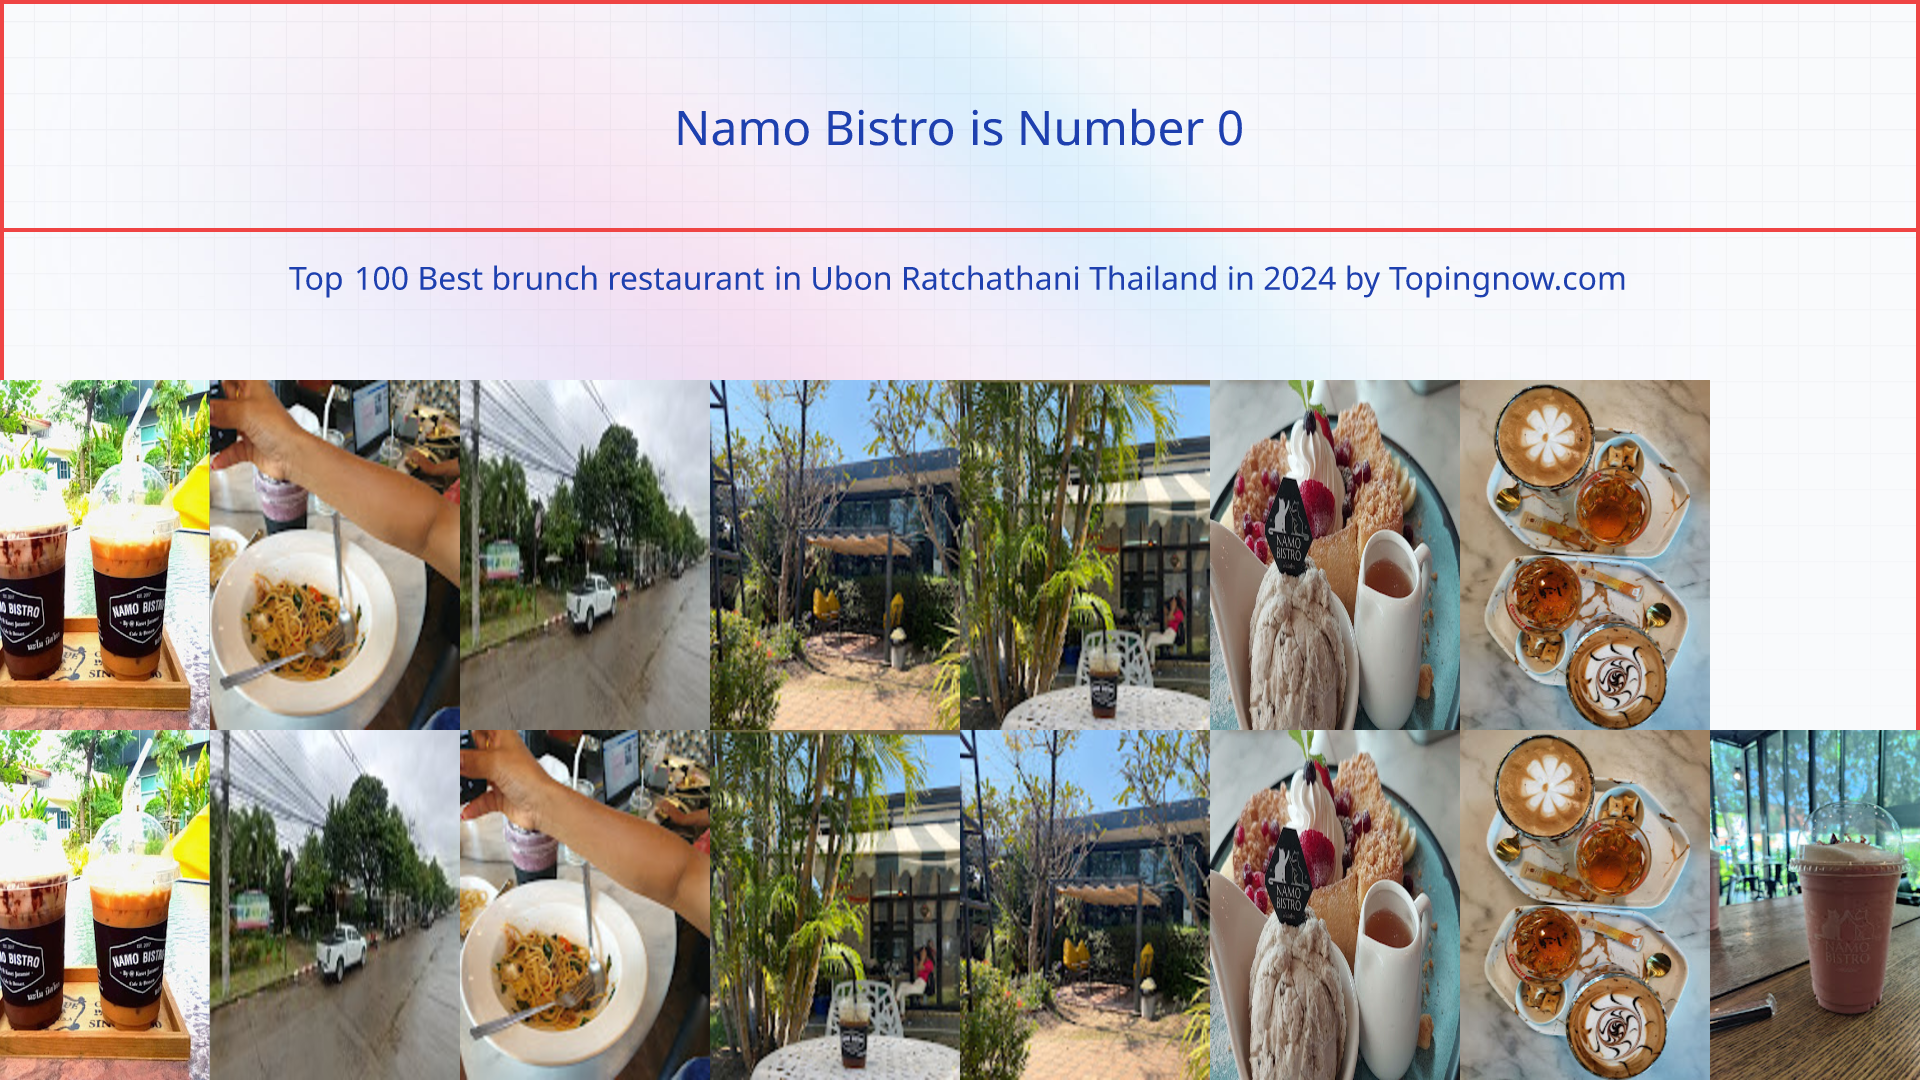 Namo Bistro: Top 100 Best brunch restaurant in Ubon Ratchathani Thailand in 2024